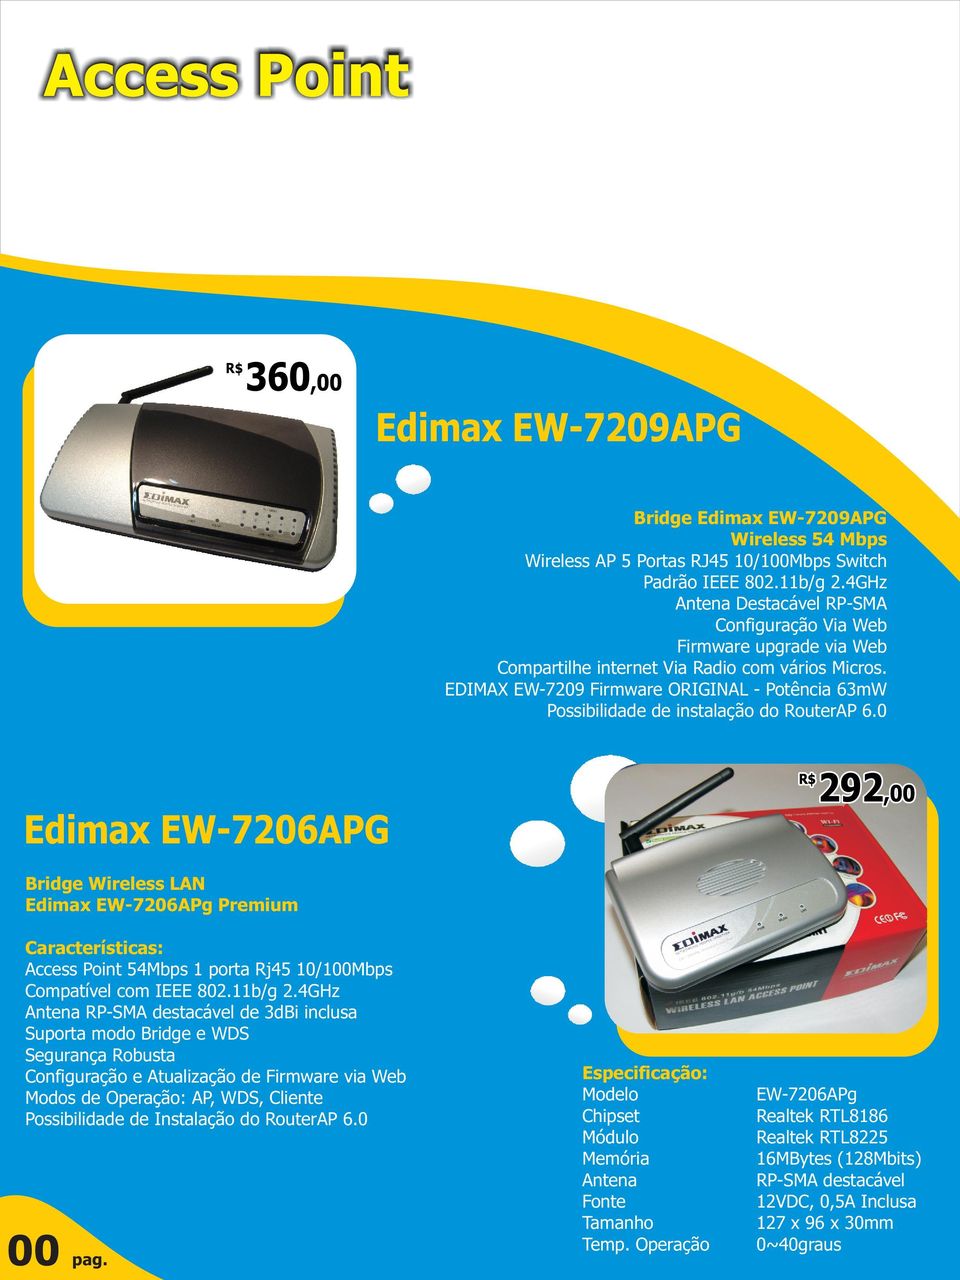 EDIMAX EW-7209 Firmware ORIGINAL - Potência 63mW Possibilidade de instalação do RouterAP 6.